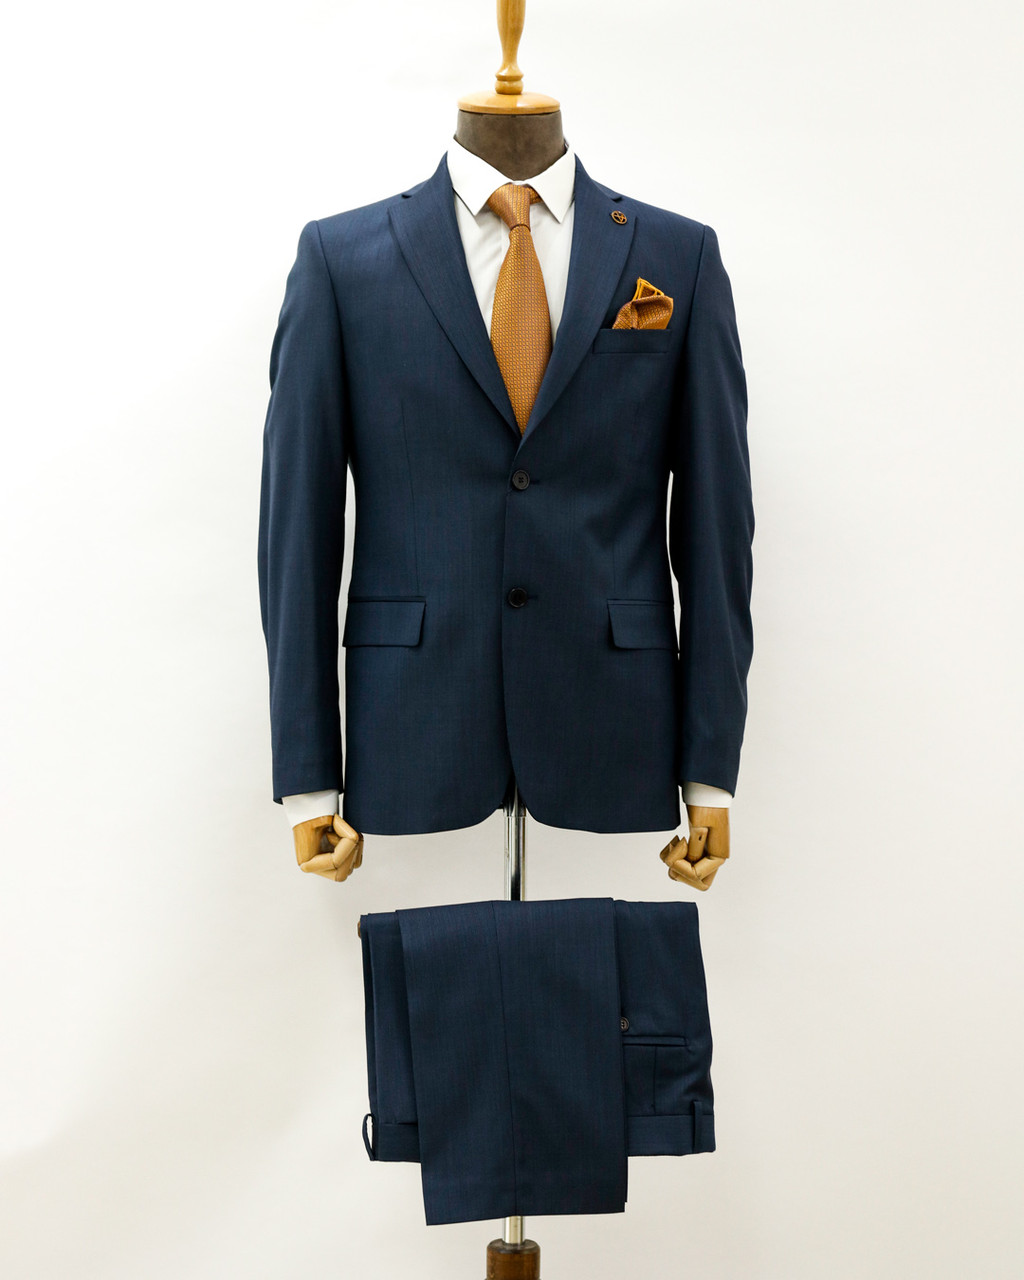 Мужской деловой костюм «UM&H 91050993» синий, фото 1